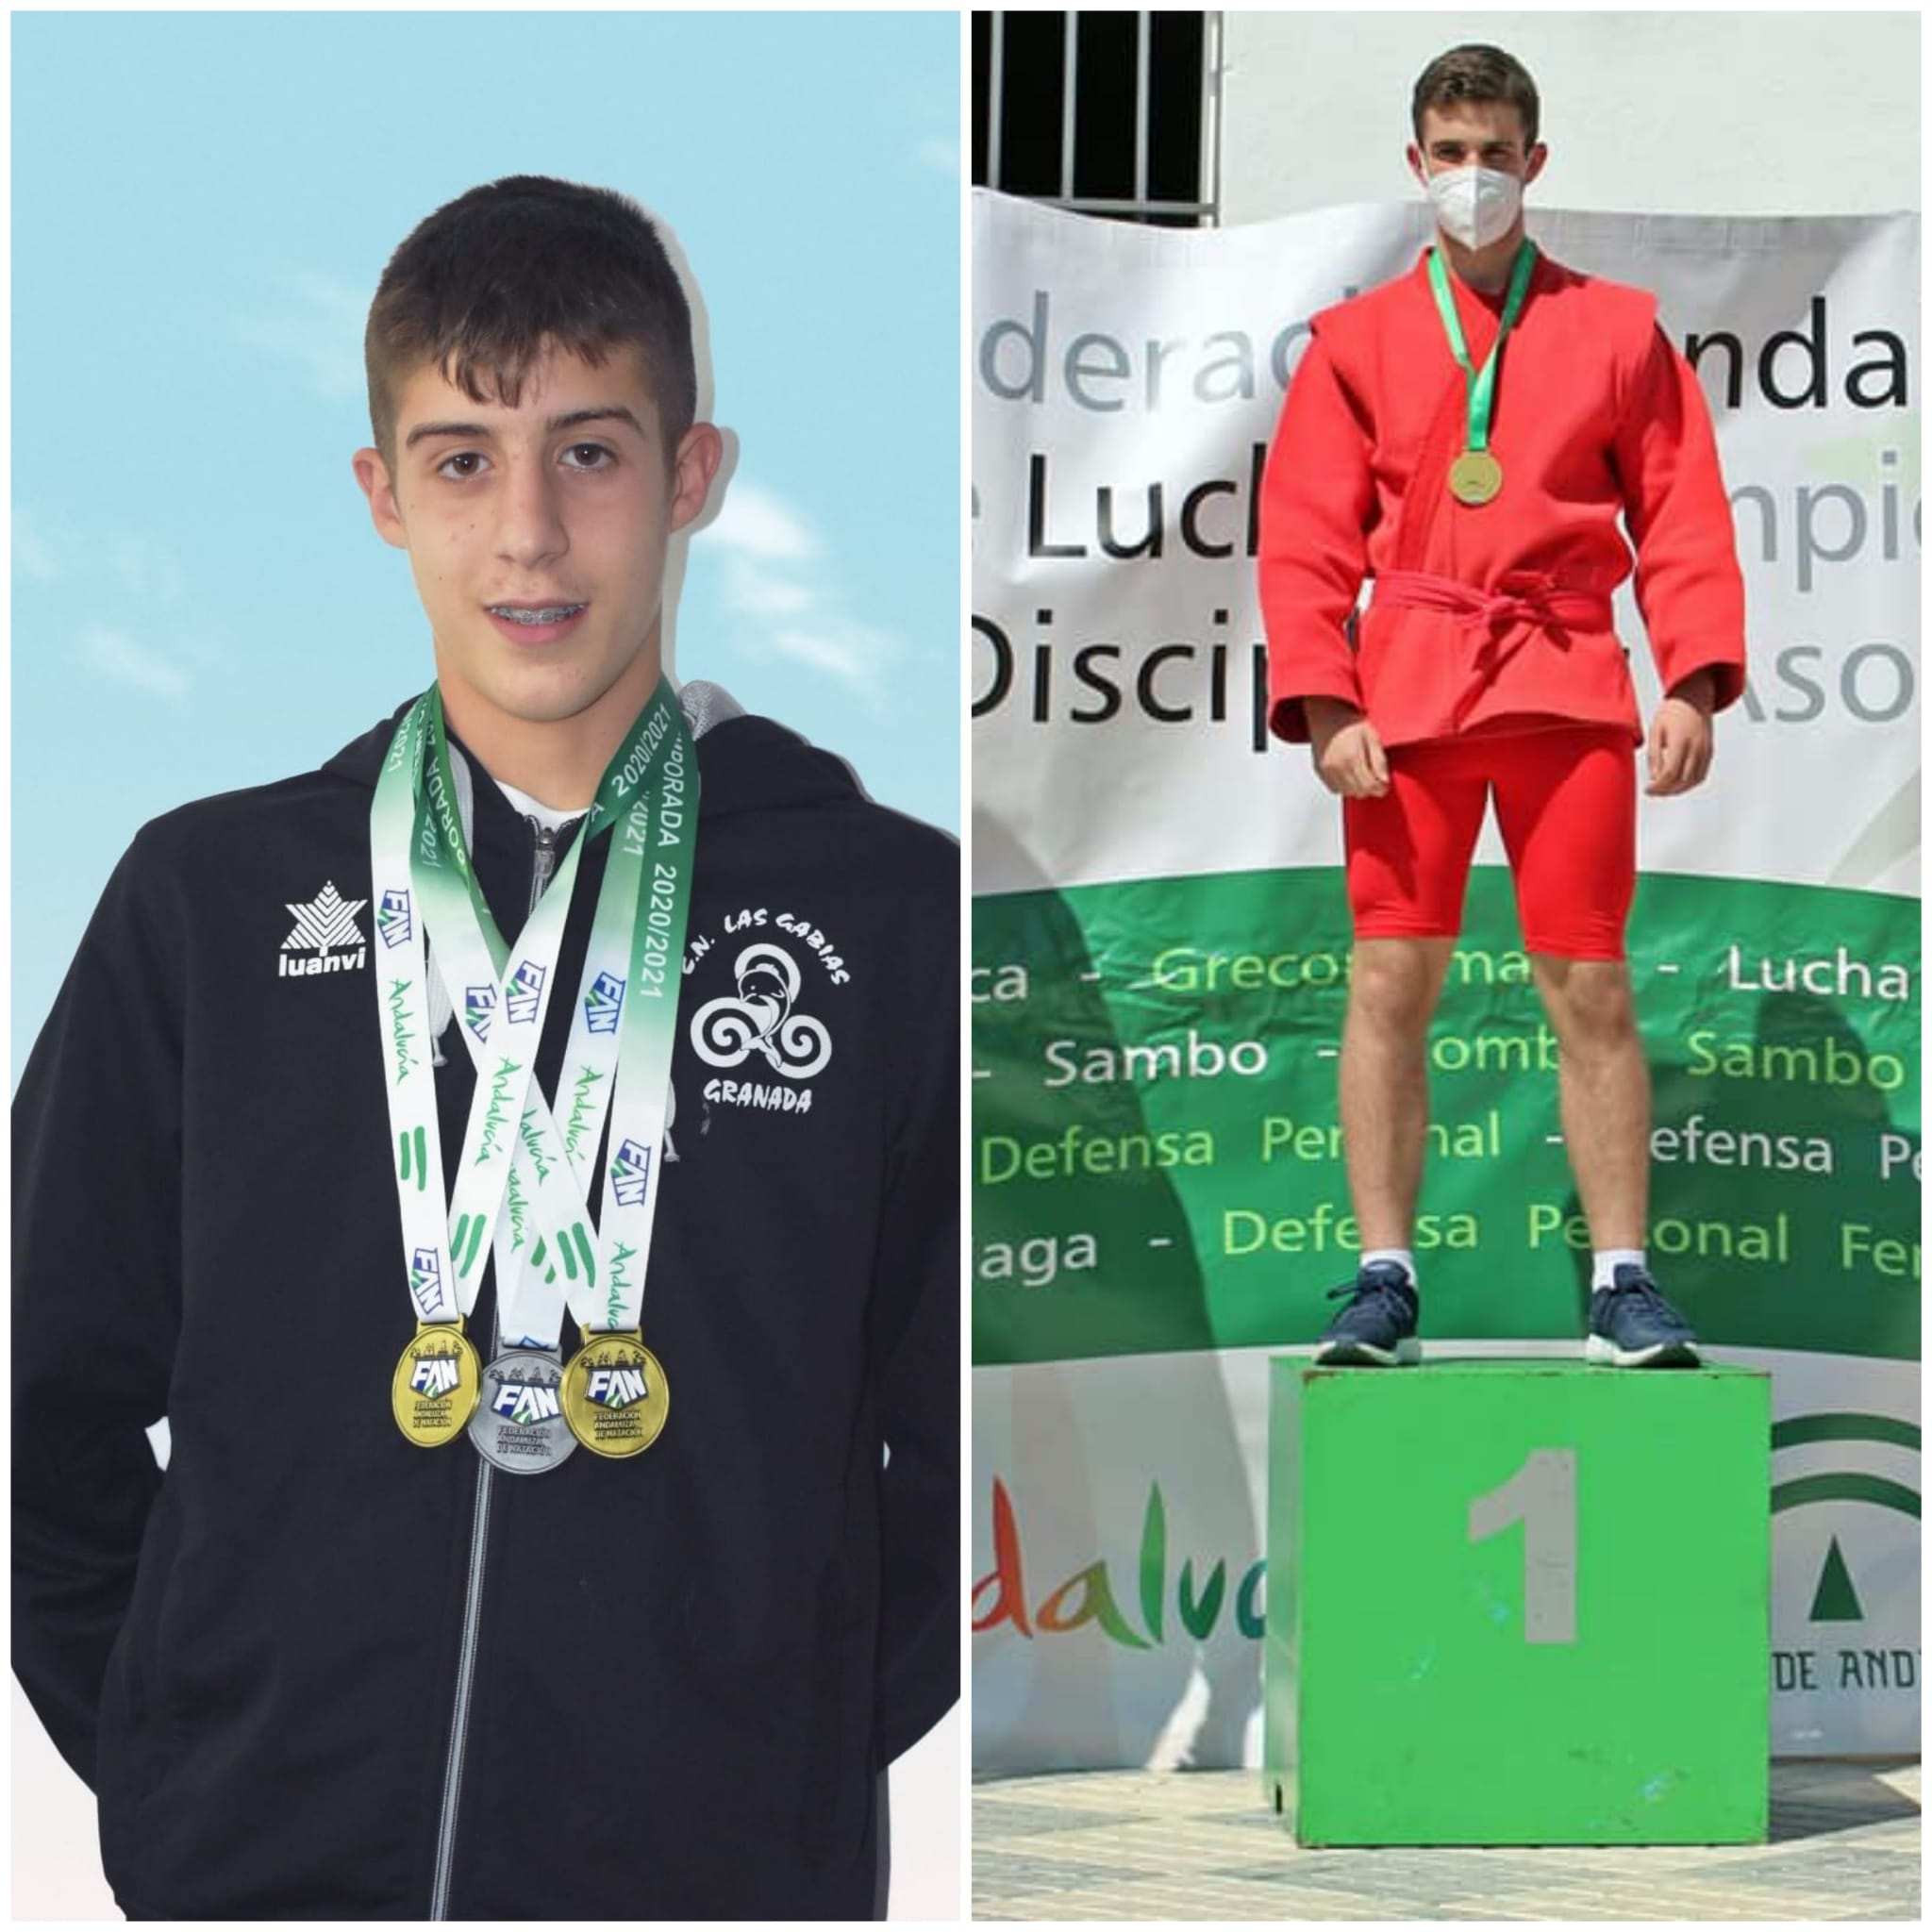 Los culleros Jorge Gómez y Hugo Molina, campeones de Andalucía en lucha sambo y natación estilo mariposa